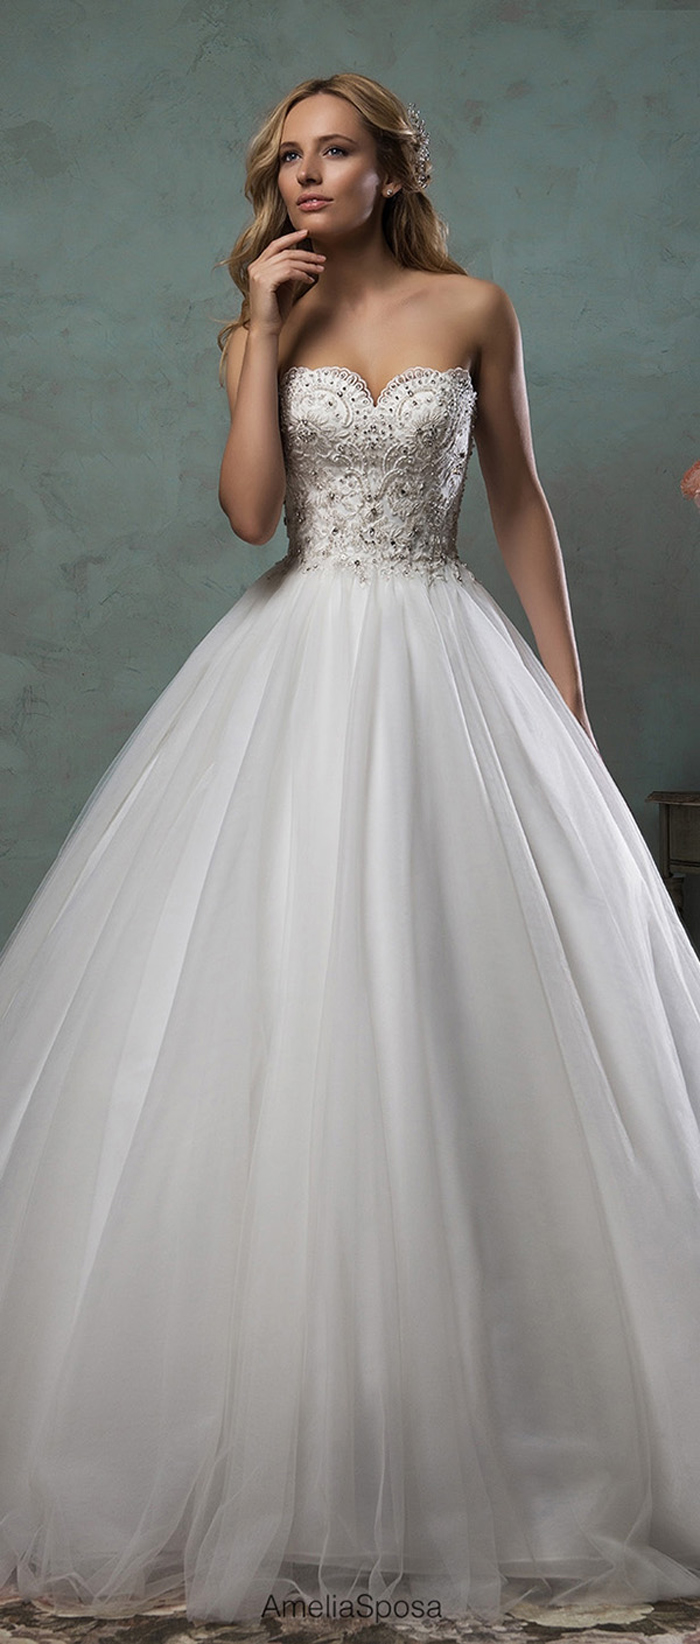 super sparkly wedding dress